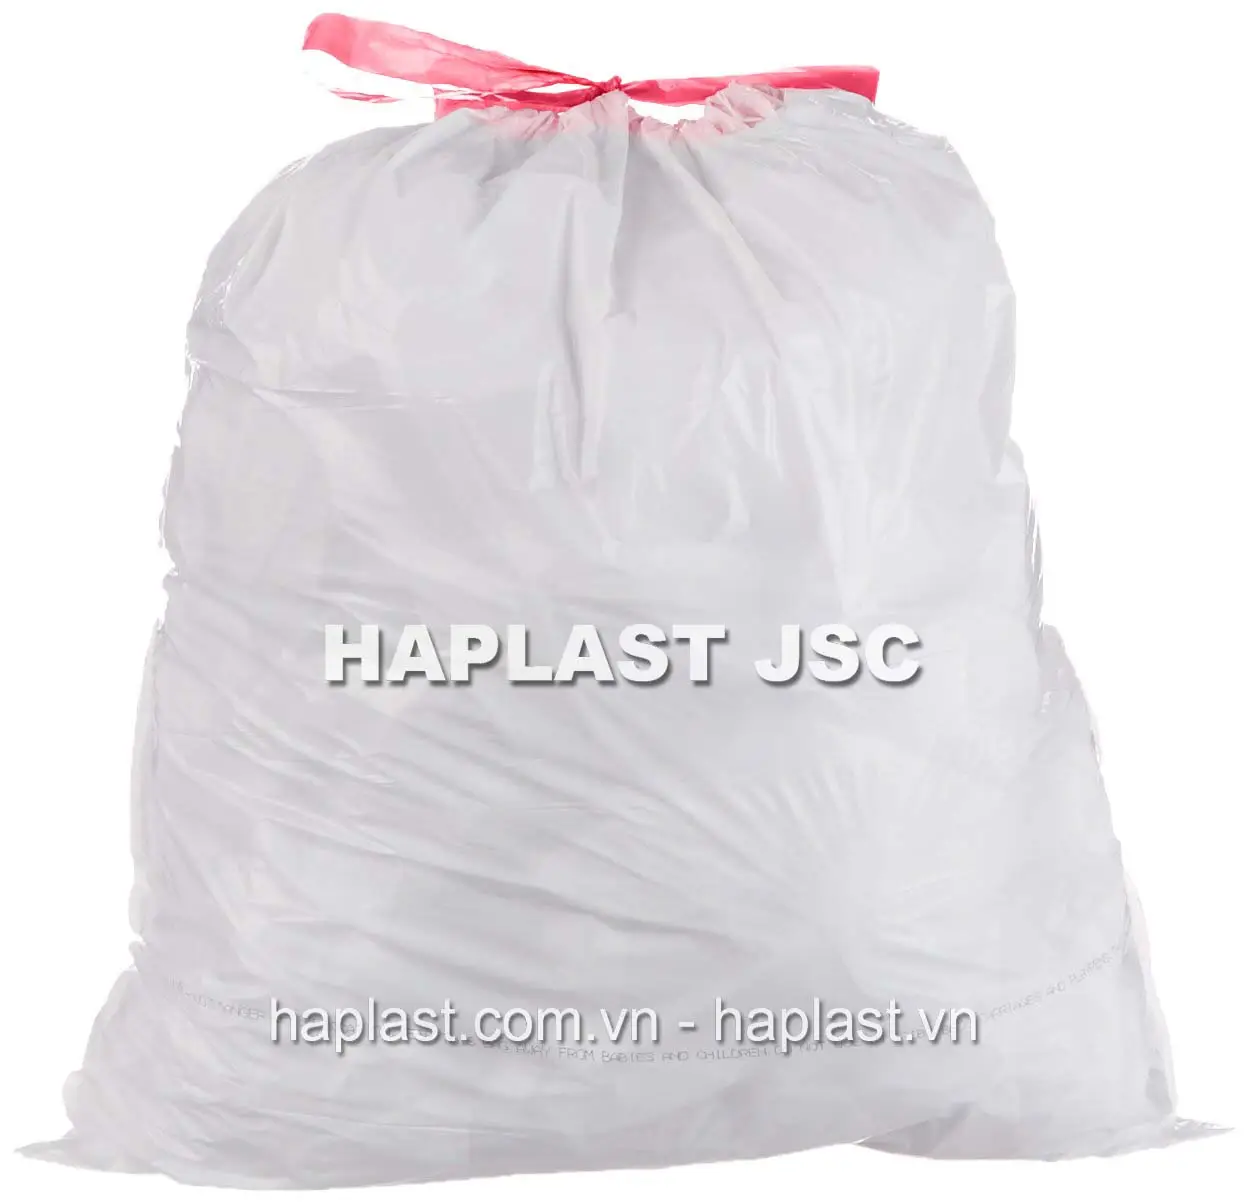 कचरा वियतनाम आपूर्तिकर्ता के लिए ड्रॉस्ट्रिंग बैग के साथ रोल पर एचडीपीई/एलडीपीई टिकाऊ ड्रॉ स्ट्रिंग कचरा बैग